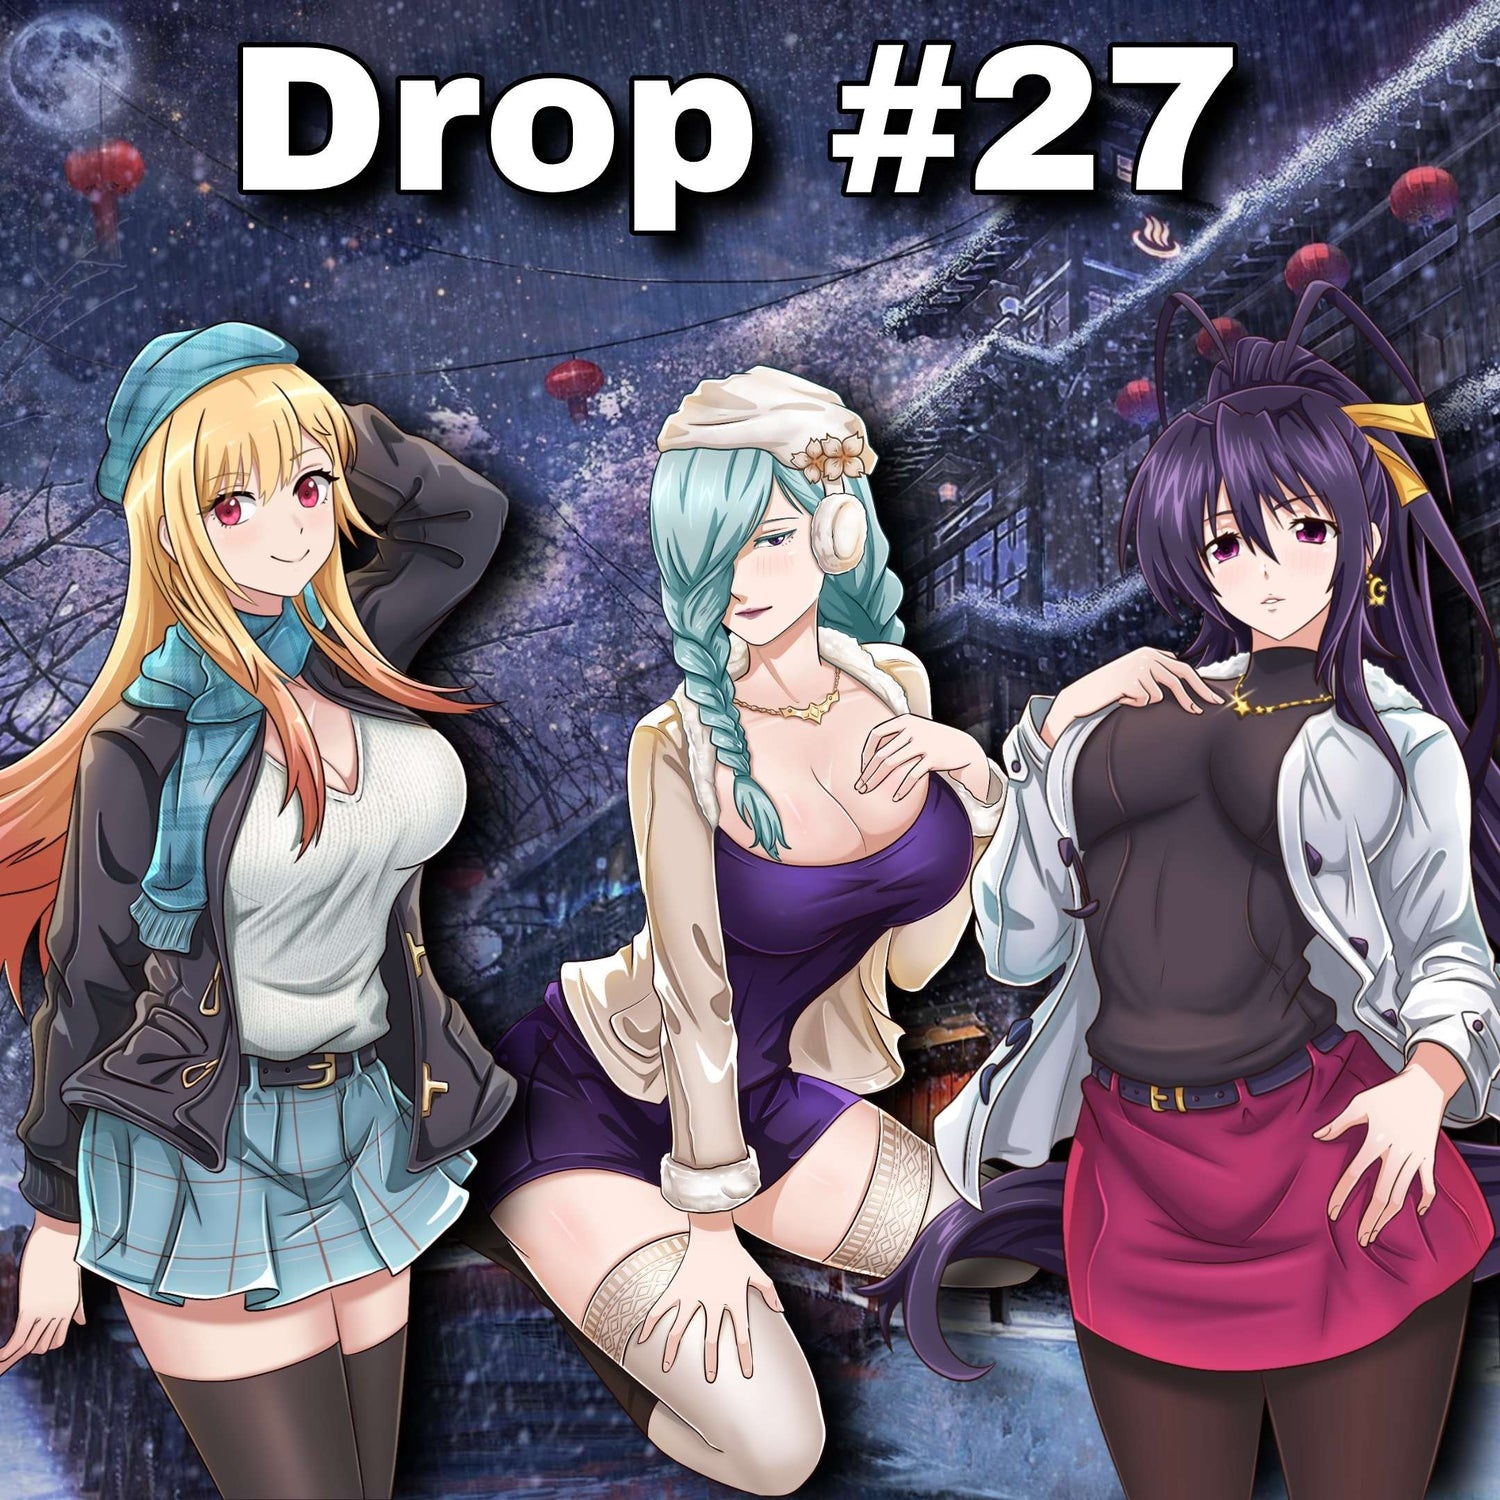 Drop #27